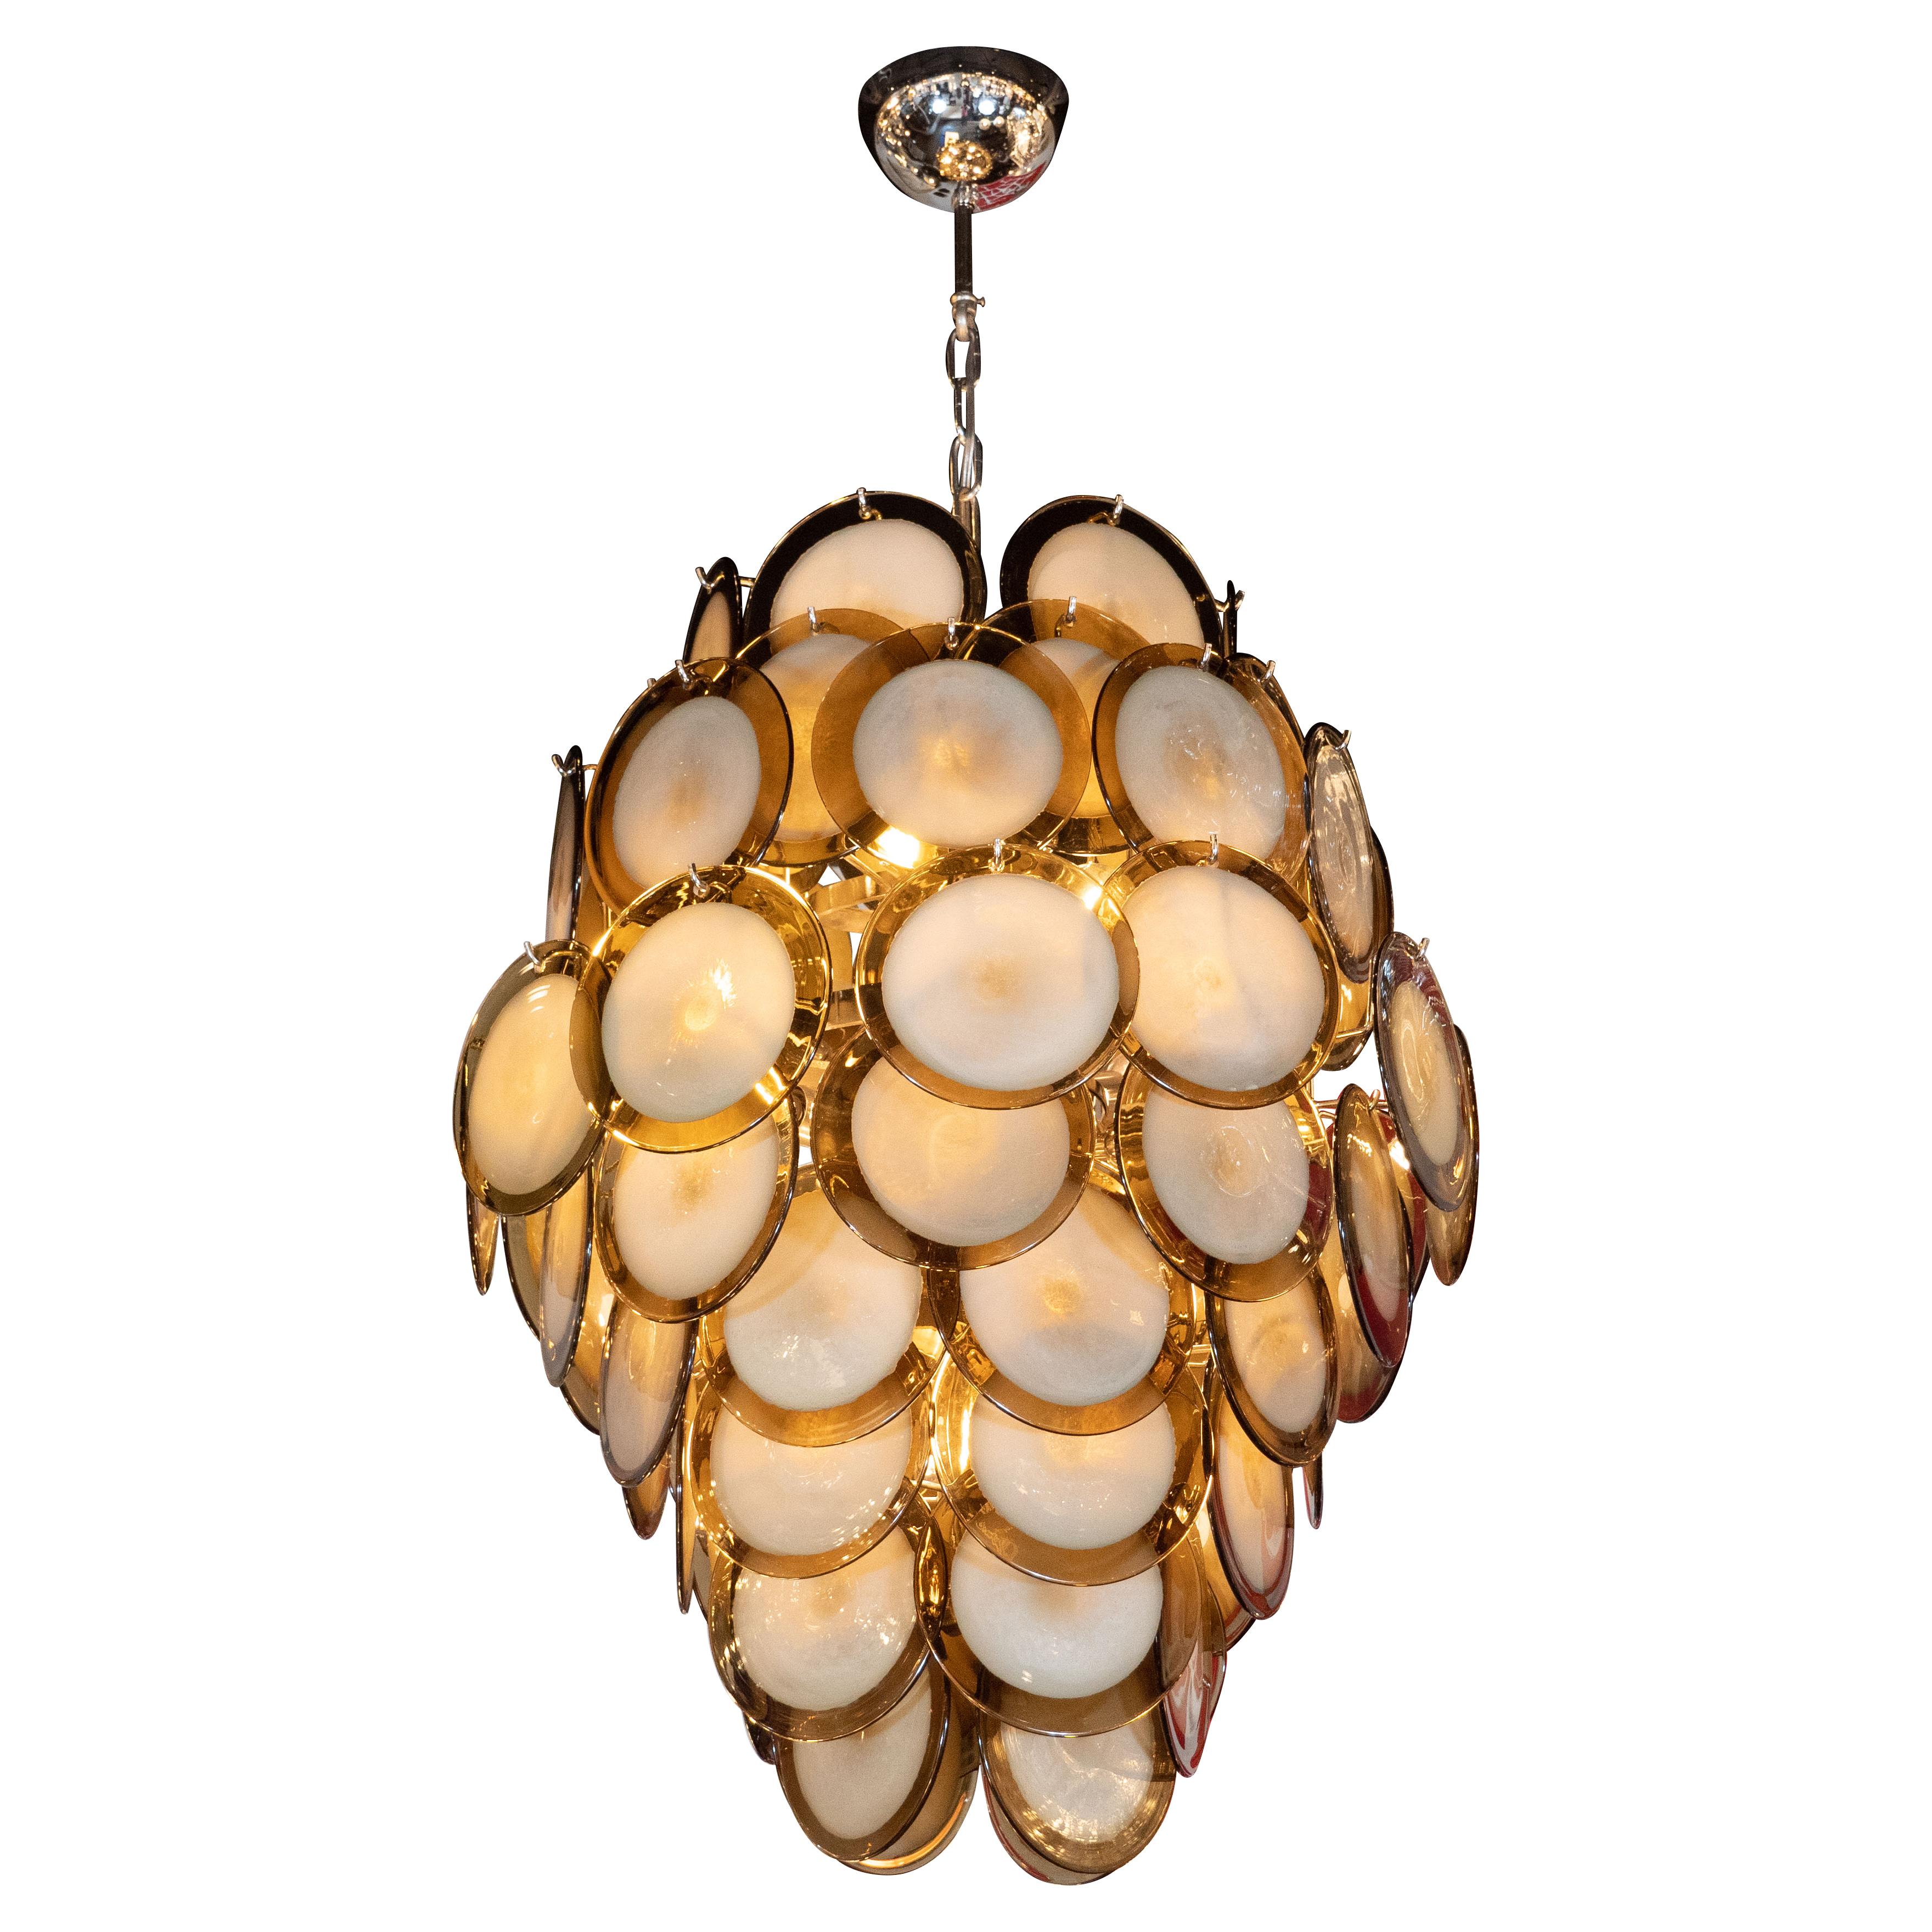 Cet étonnant lustre moderniste a été réalisé par notre atelier de Murano, en Italie - l'île au large de Venise réputée depuis des siècles pour sa production de verre de qualité supérieure - en exclusivité pour nous. Elle présente une forme de pagode